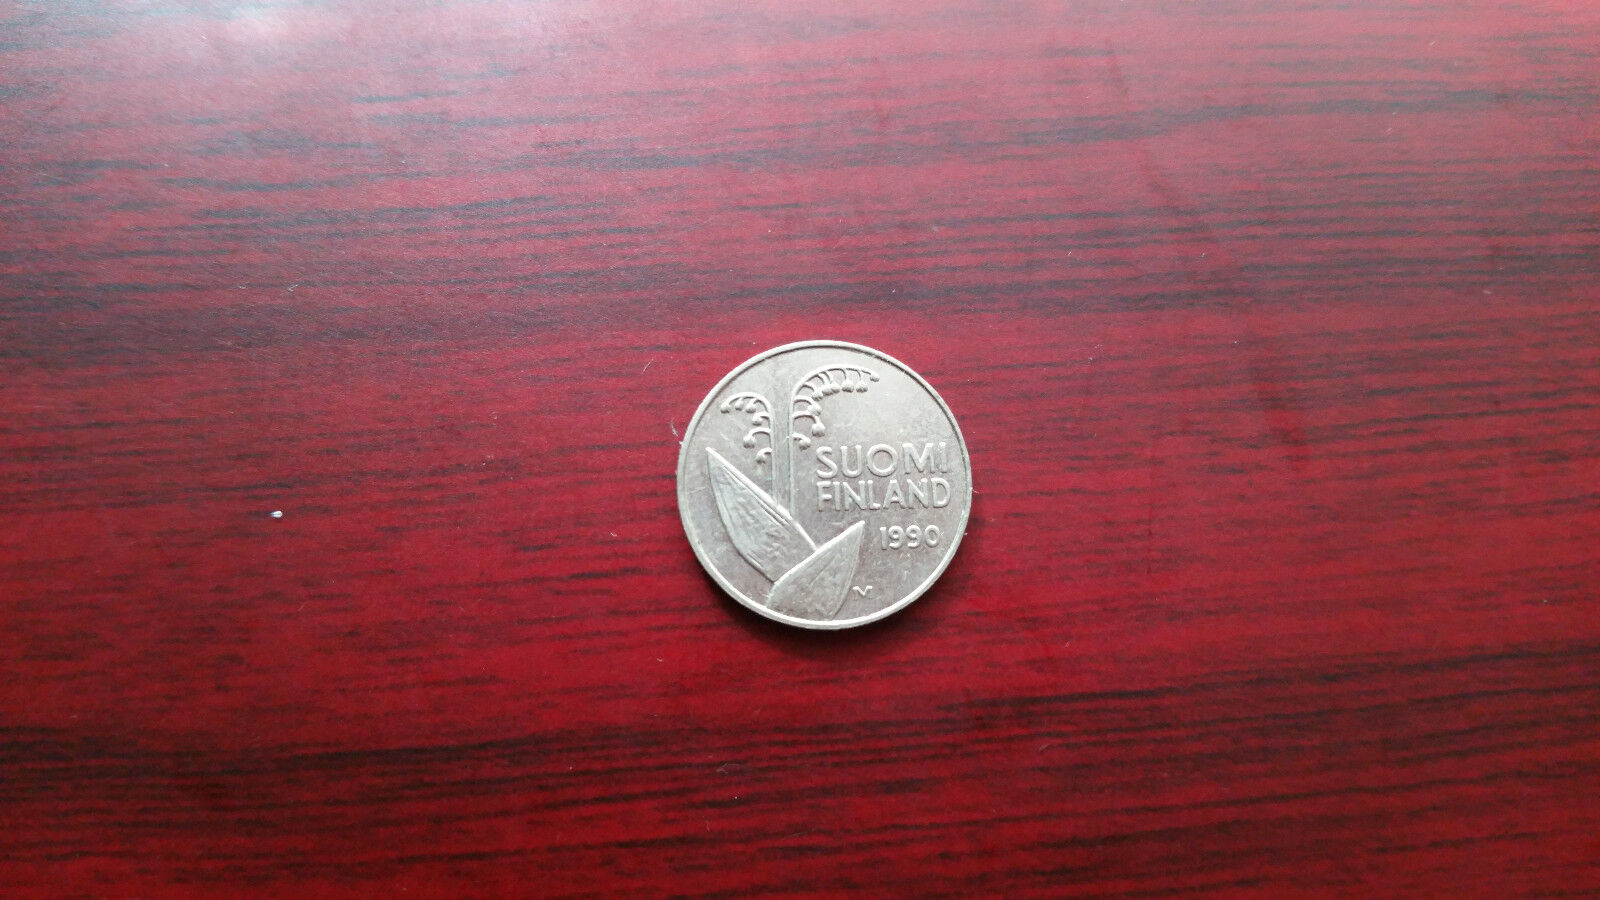 1990 and 1996 Suomi Finland 10 penni Без бренда